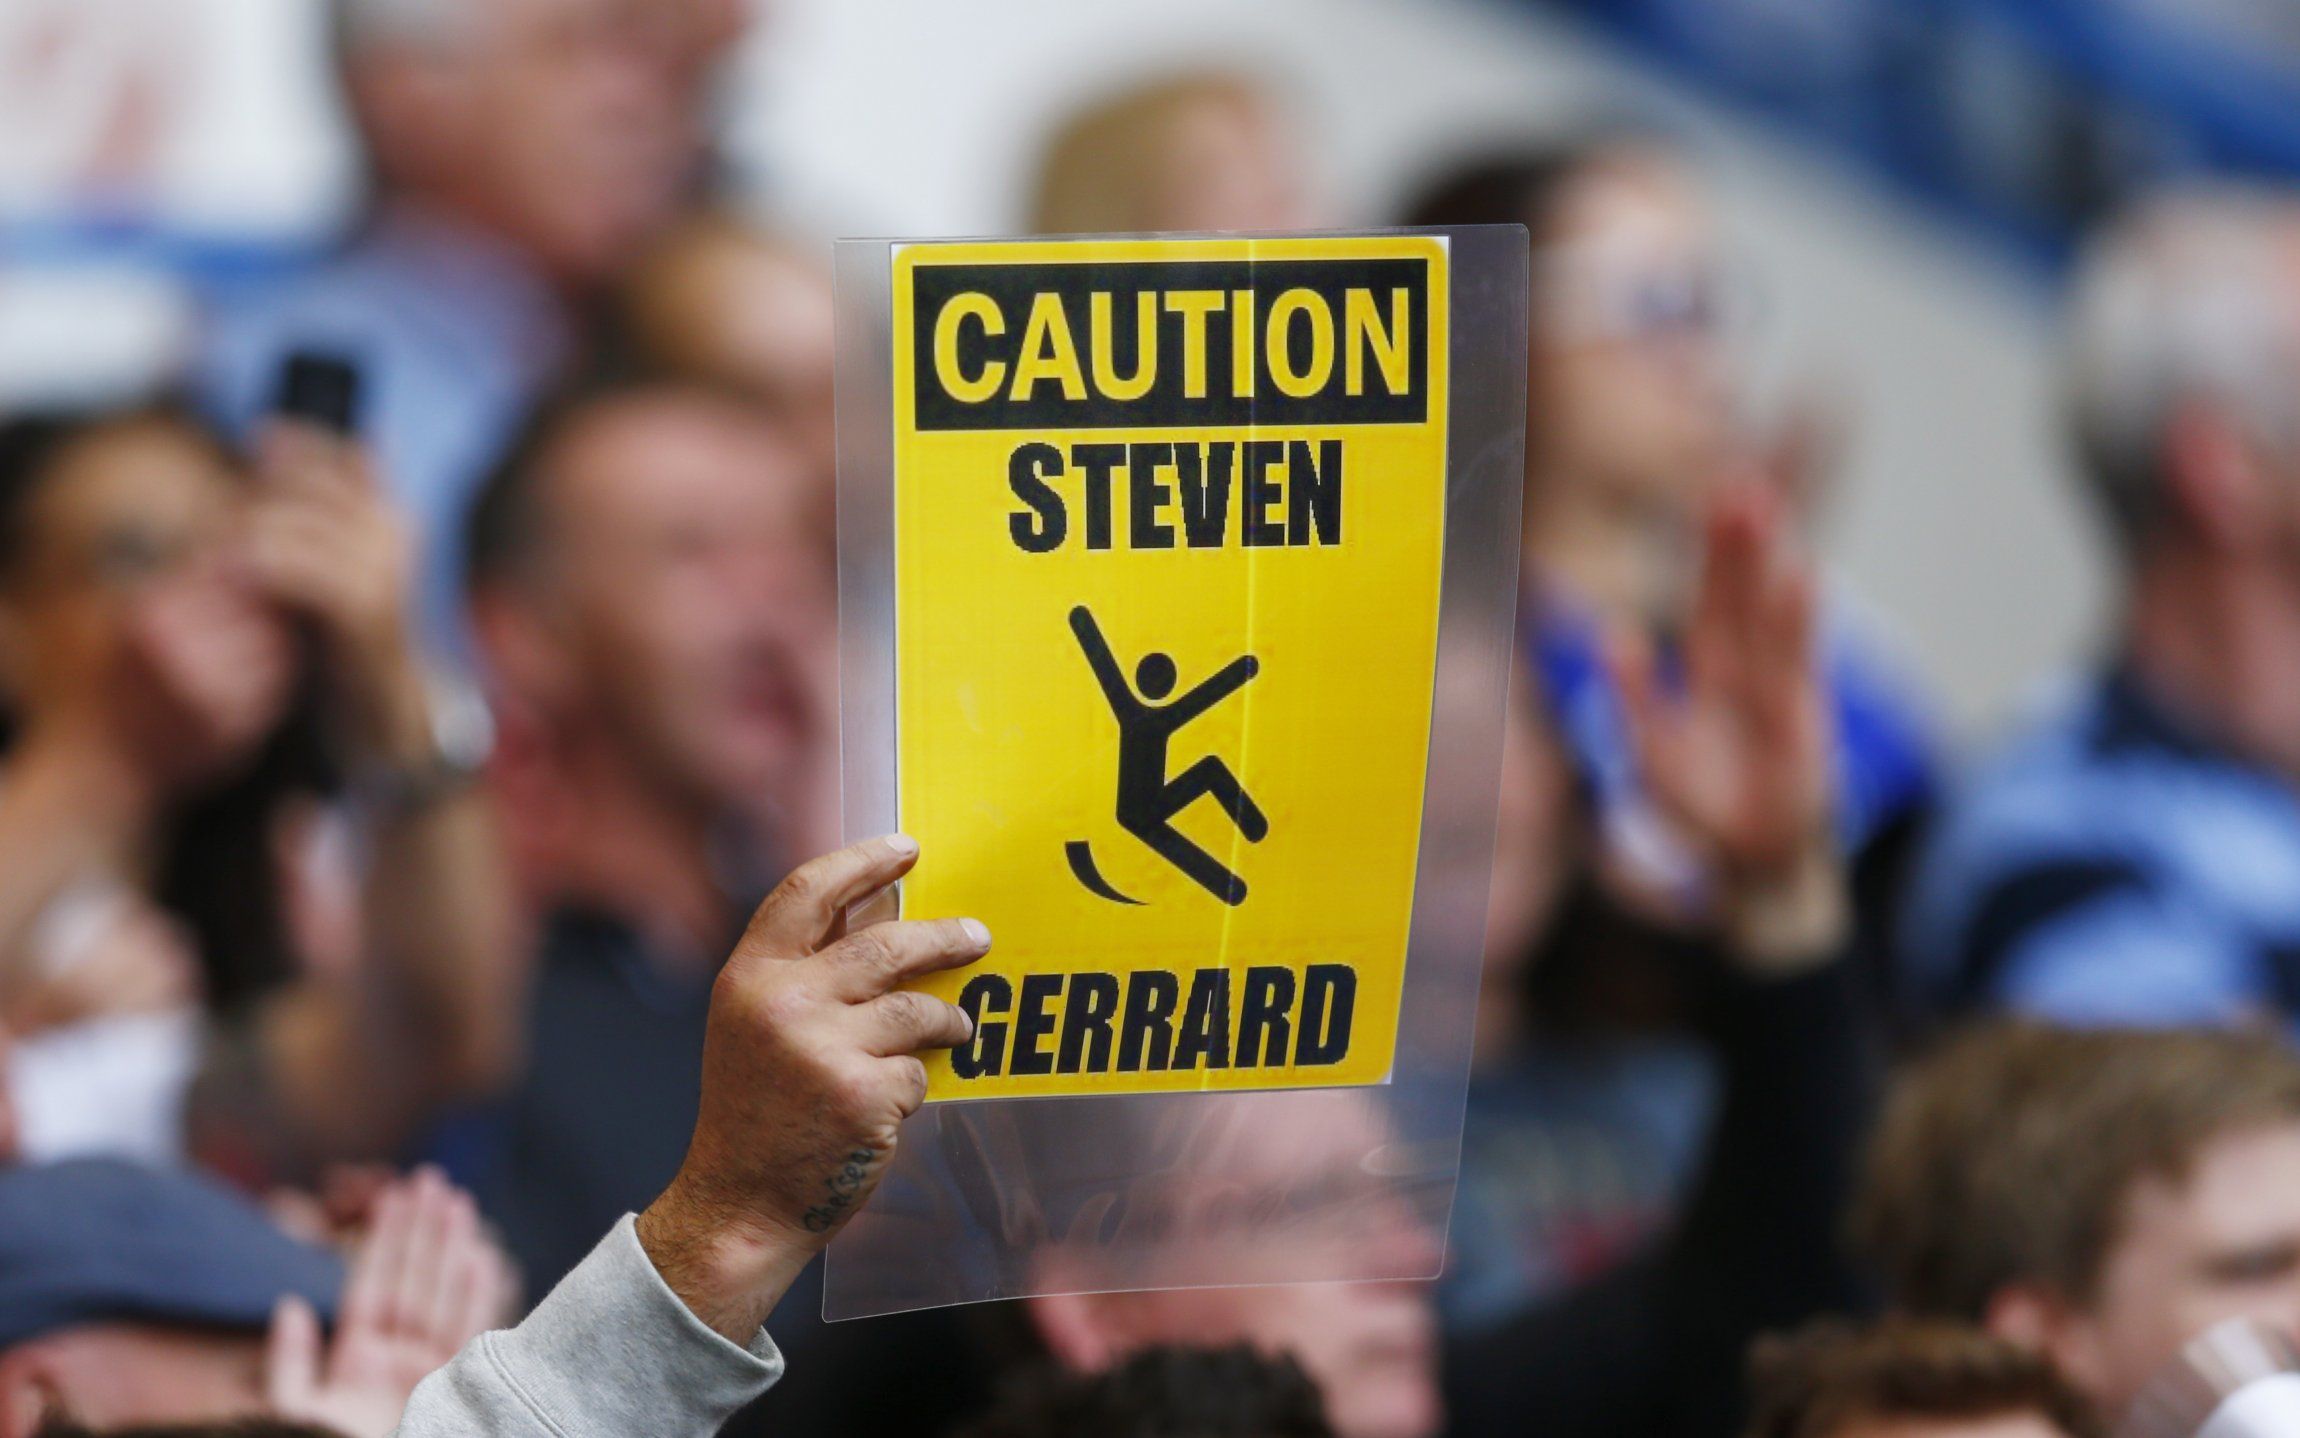 Chelsea fans mock Steven Gerrard